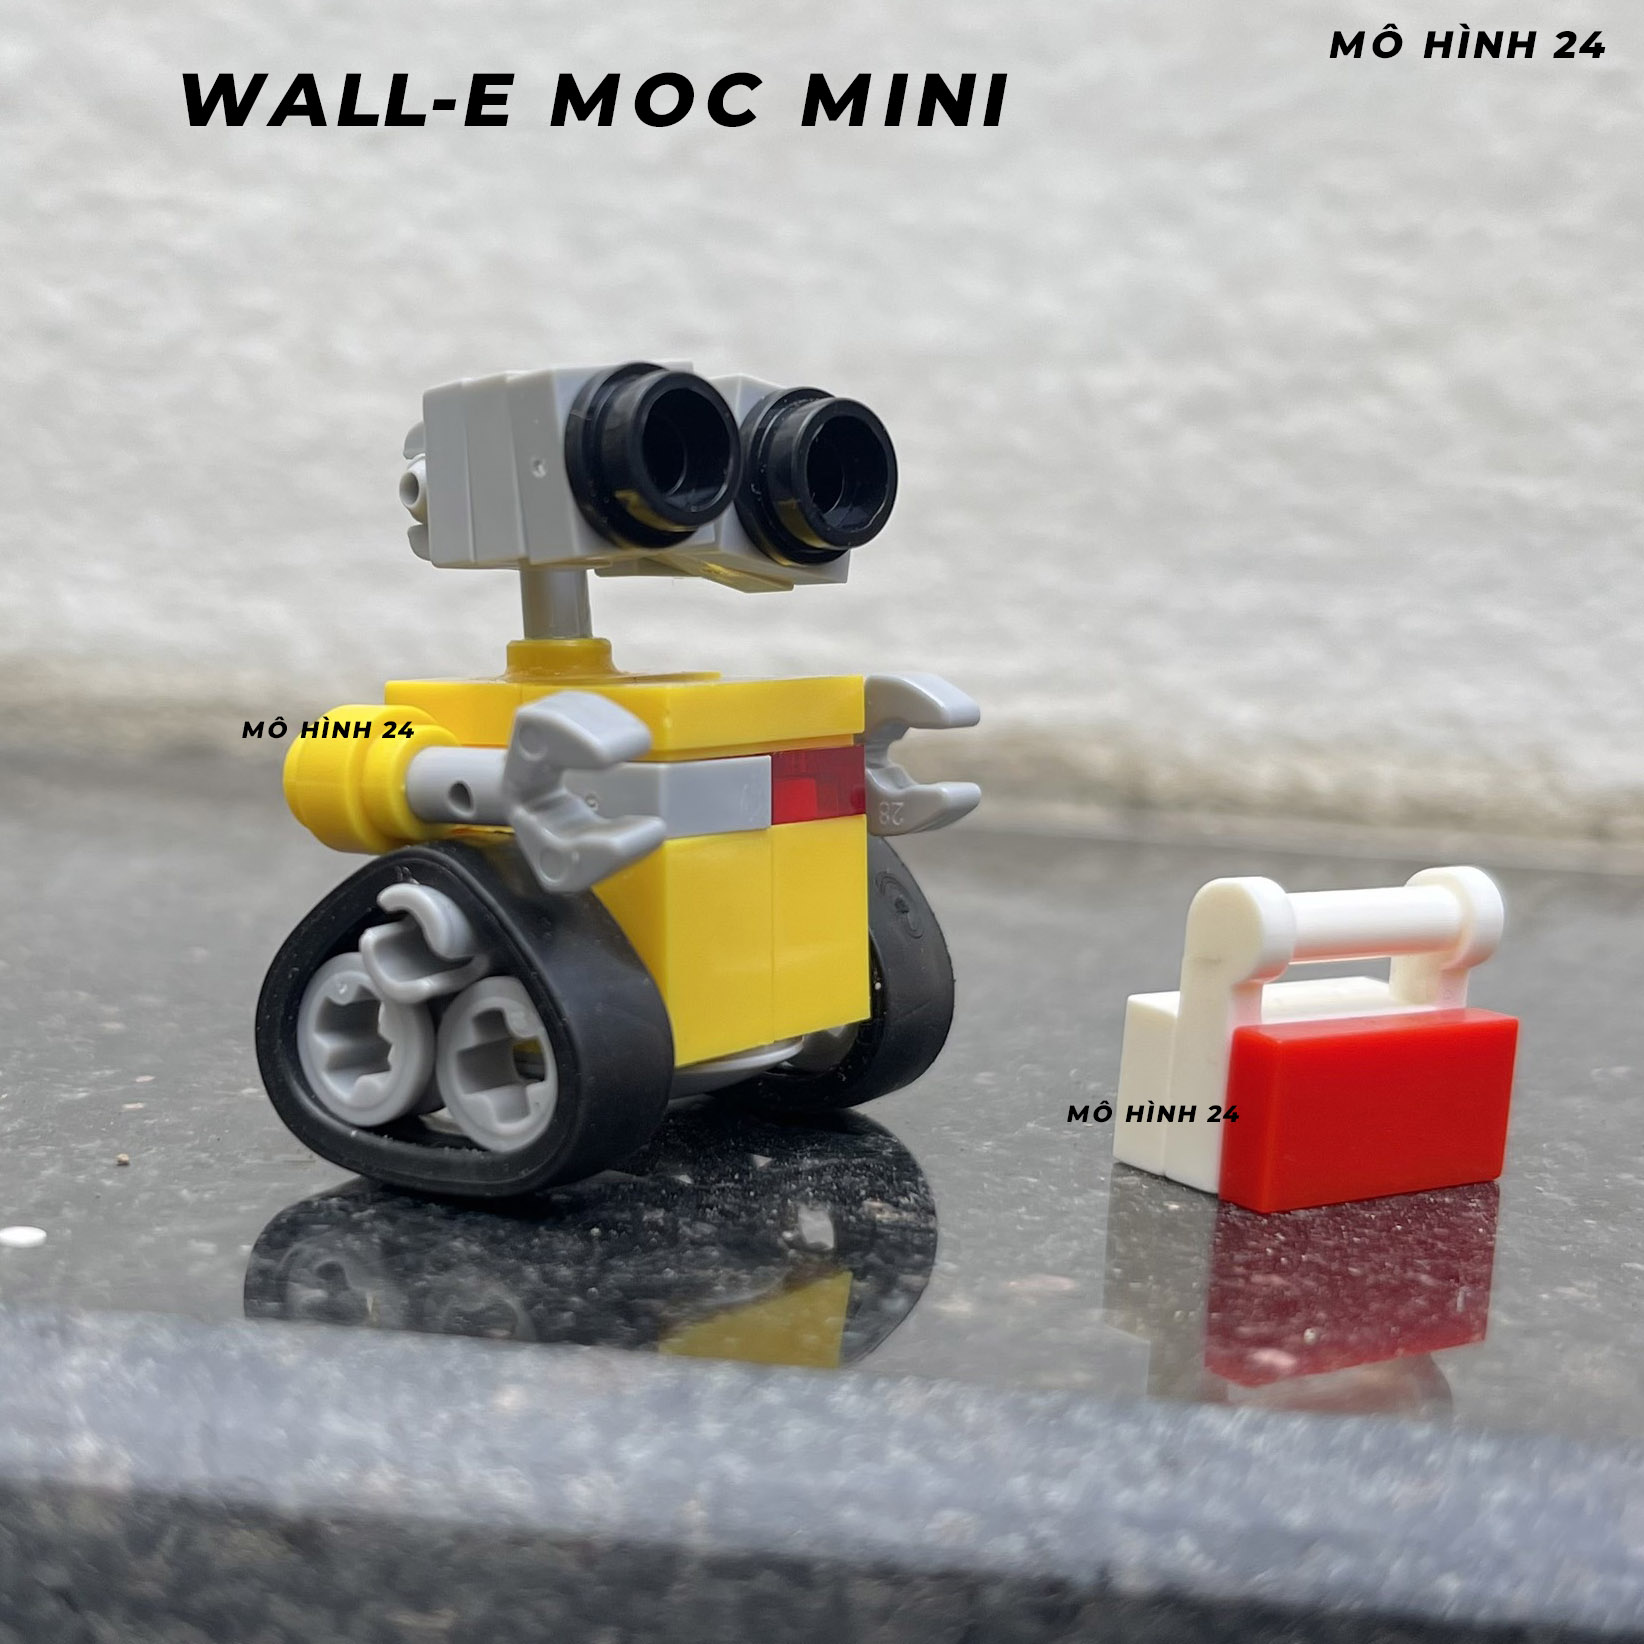 Đồ chơi lắp ráp xếp hình lego Wall-E MOC MINI WALL e người máy robot biết yêu disney tự chế custom figure lego